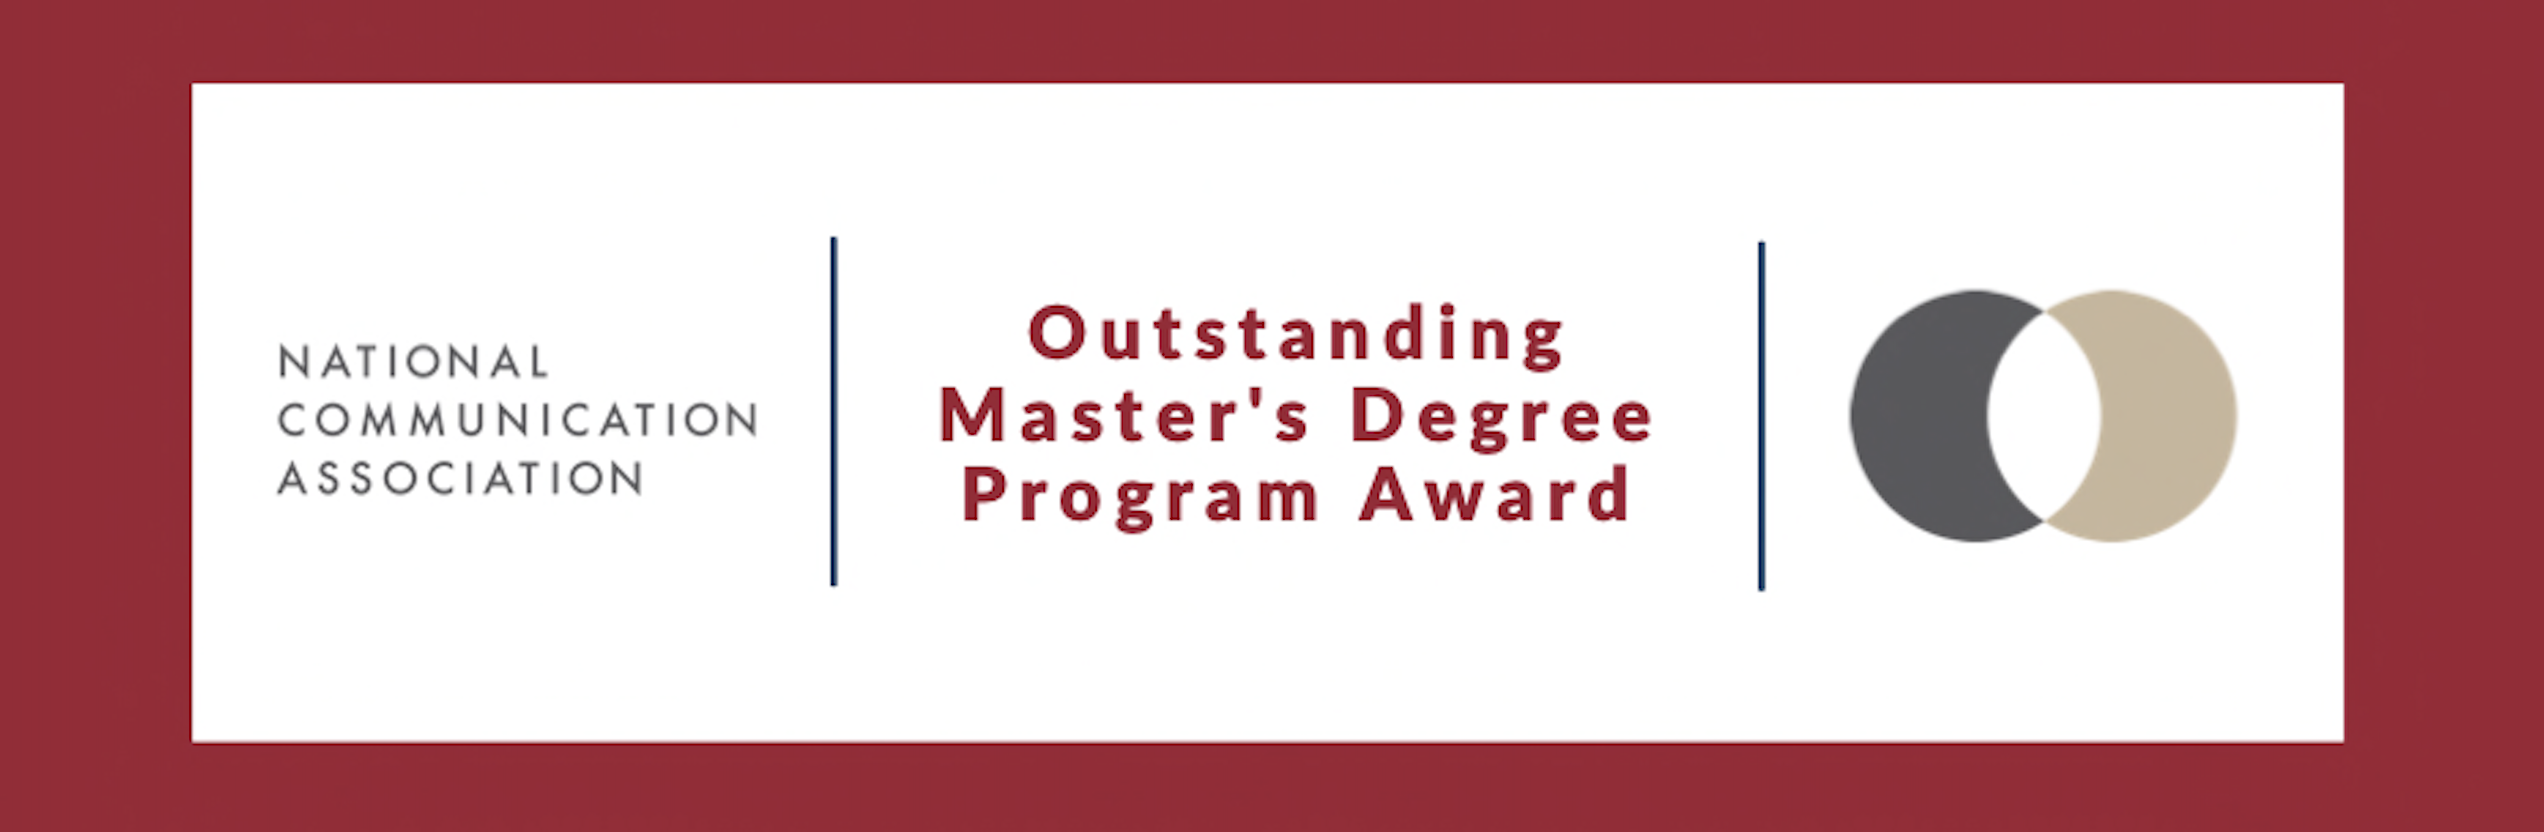 outstanding degree program award